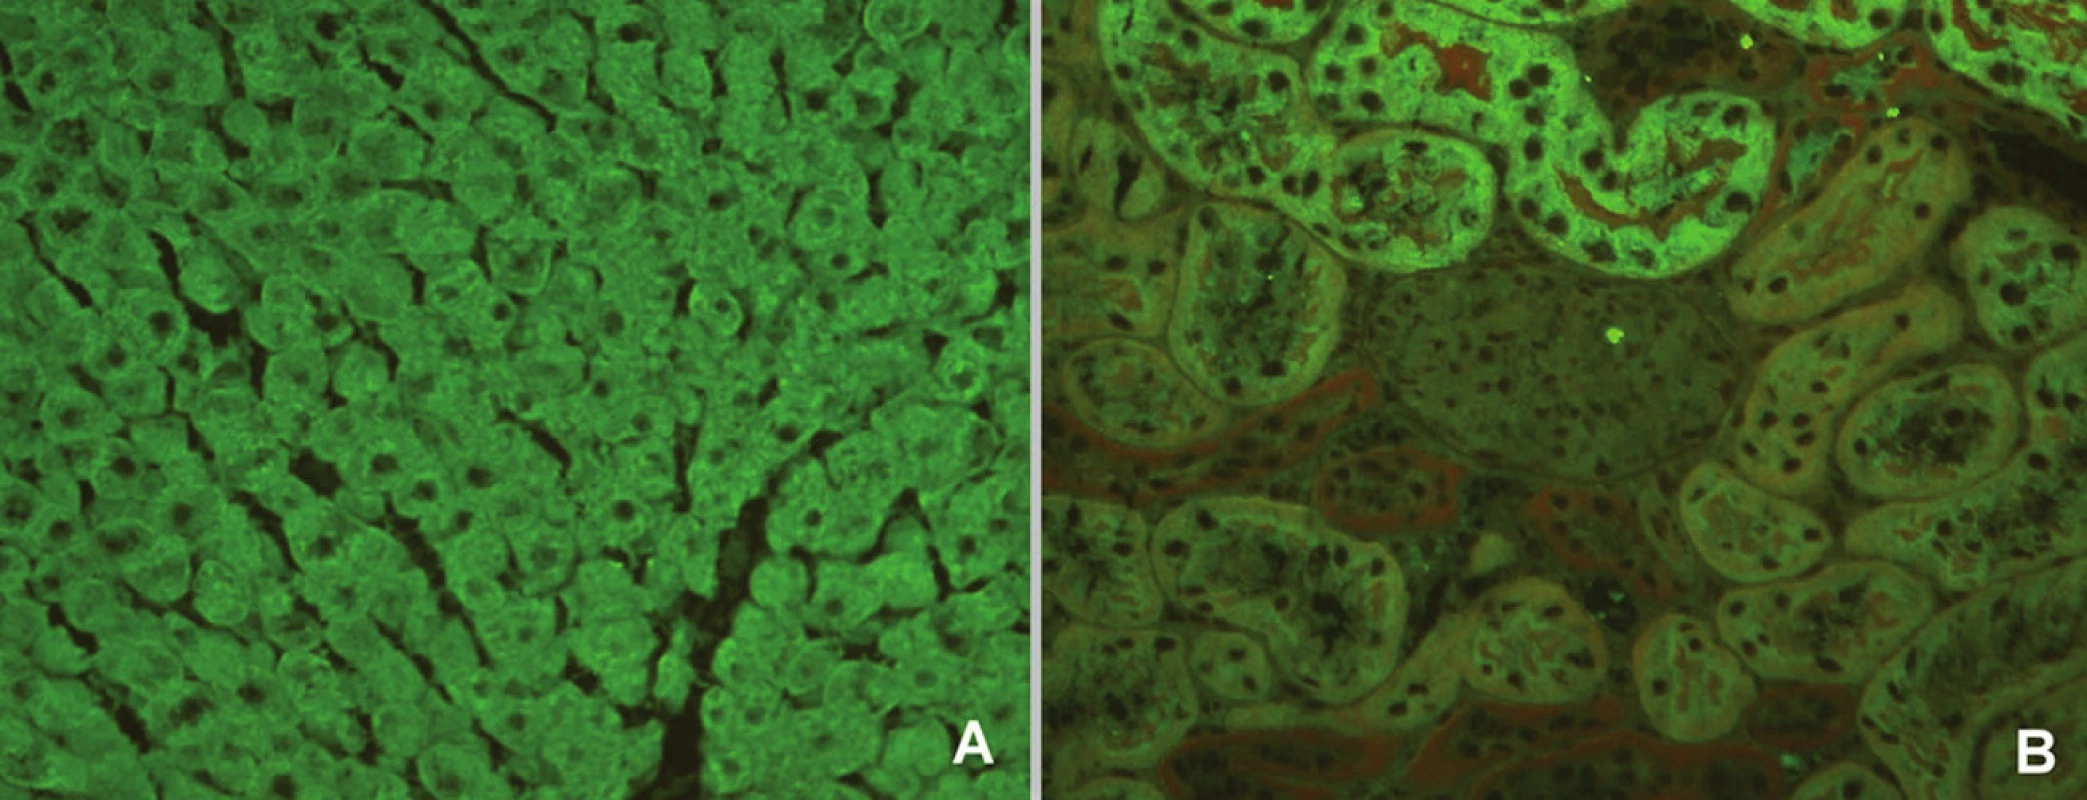 Imunofluorescenční obraz protilátek proti mikrozomálnímantigenůmjater a ledvin 1 (substrát – krysí játra a ledvina, A – jaterní buňky, B – proximální tubuly).
Fig. 5. Immunofluorescent image of anti-liver kidney microsome antibodies 1 (substrate – rat liver and kidney, A – liver cells, B – proximal tubules).